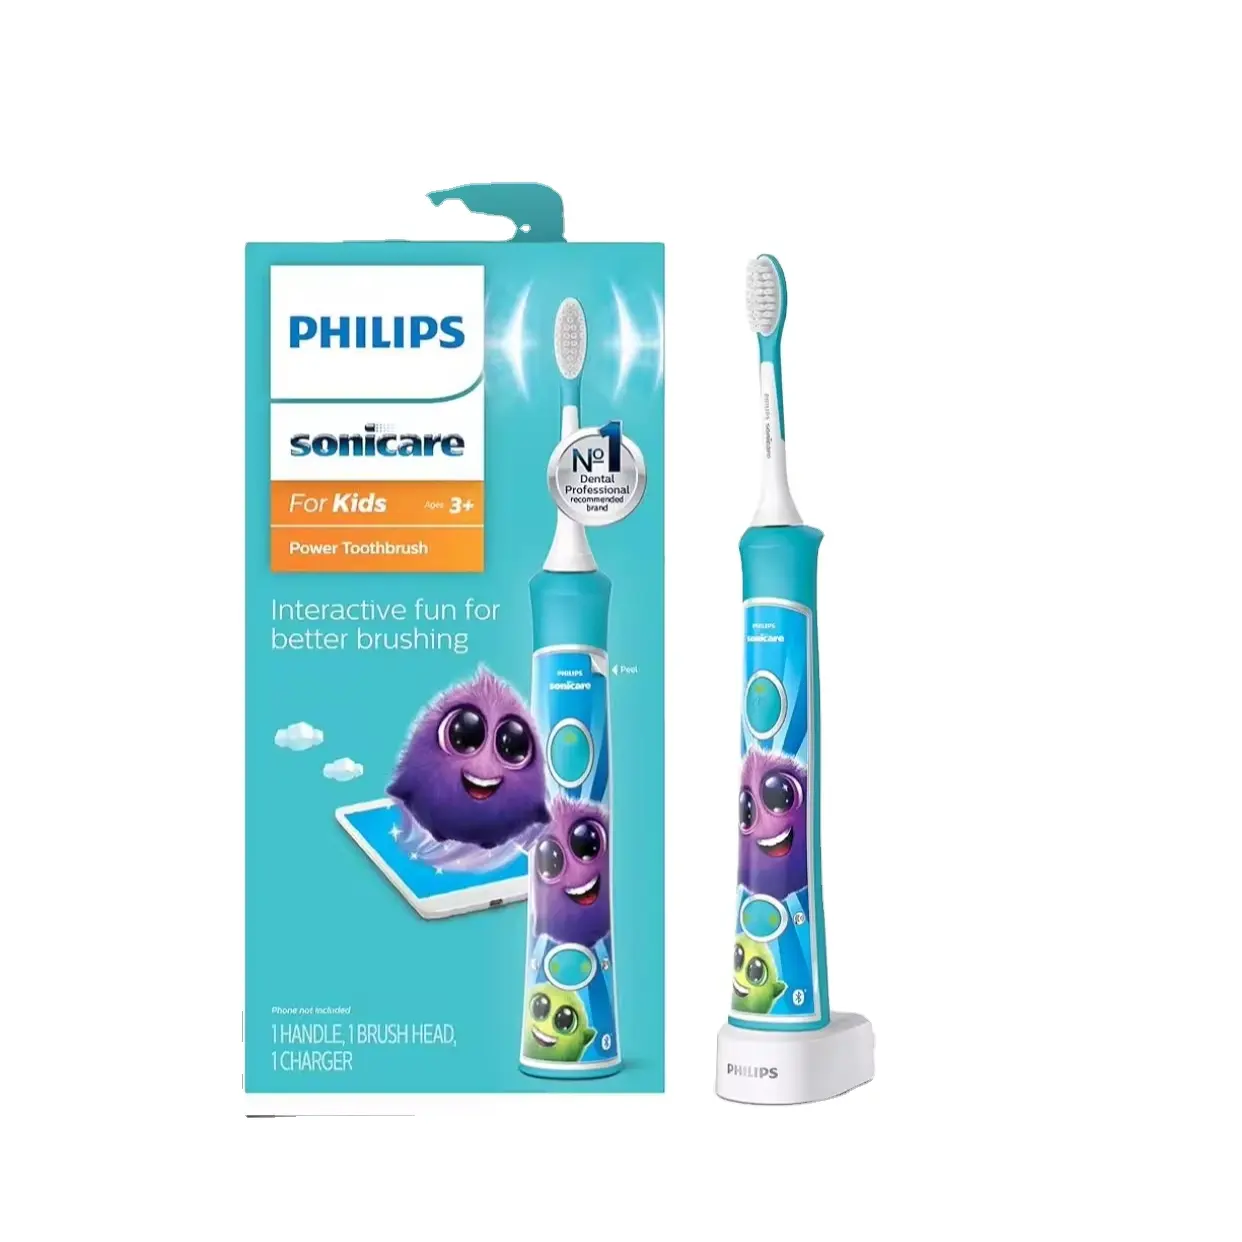 Philips Sonicare sikat gigi elektrik, sikat gigi listrik 3 + terhubung Bluetooth dapat diisi ulang, interaktif untuk sikat yang lebih baik